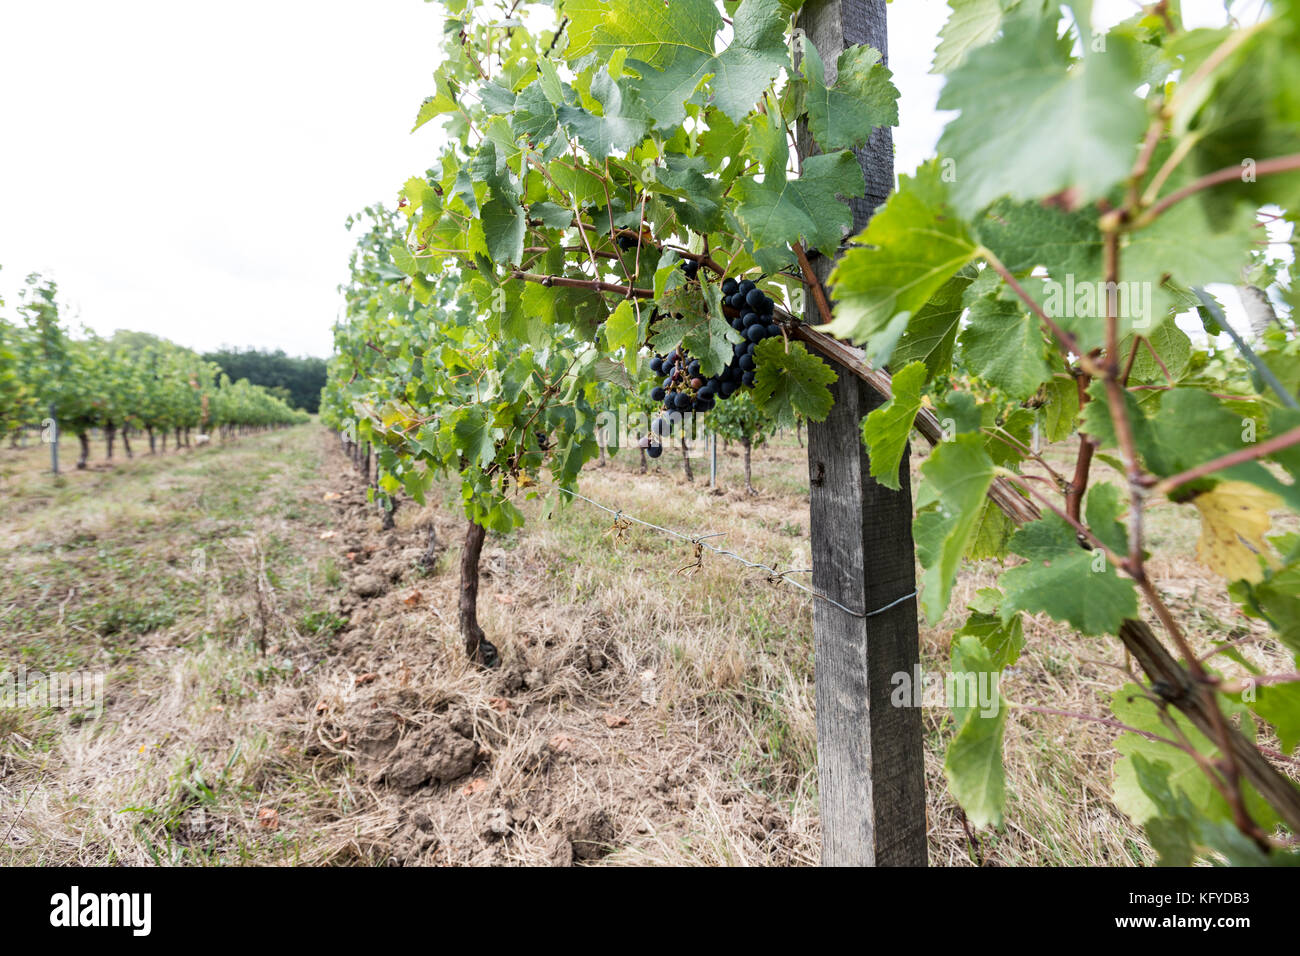 Aoc Monbazillac et Bergerac, raisins des vignobles de la région de la rivière Dordogne. Banque D'Images